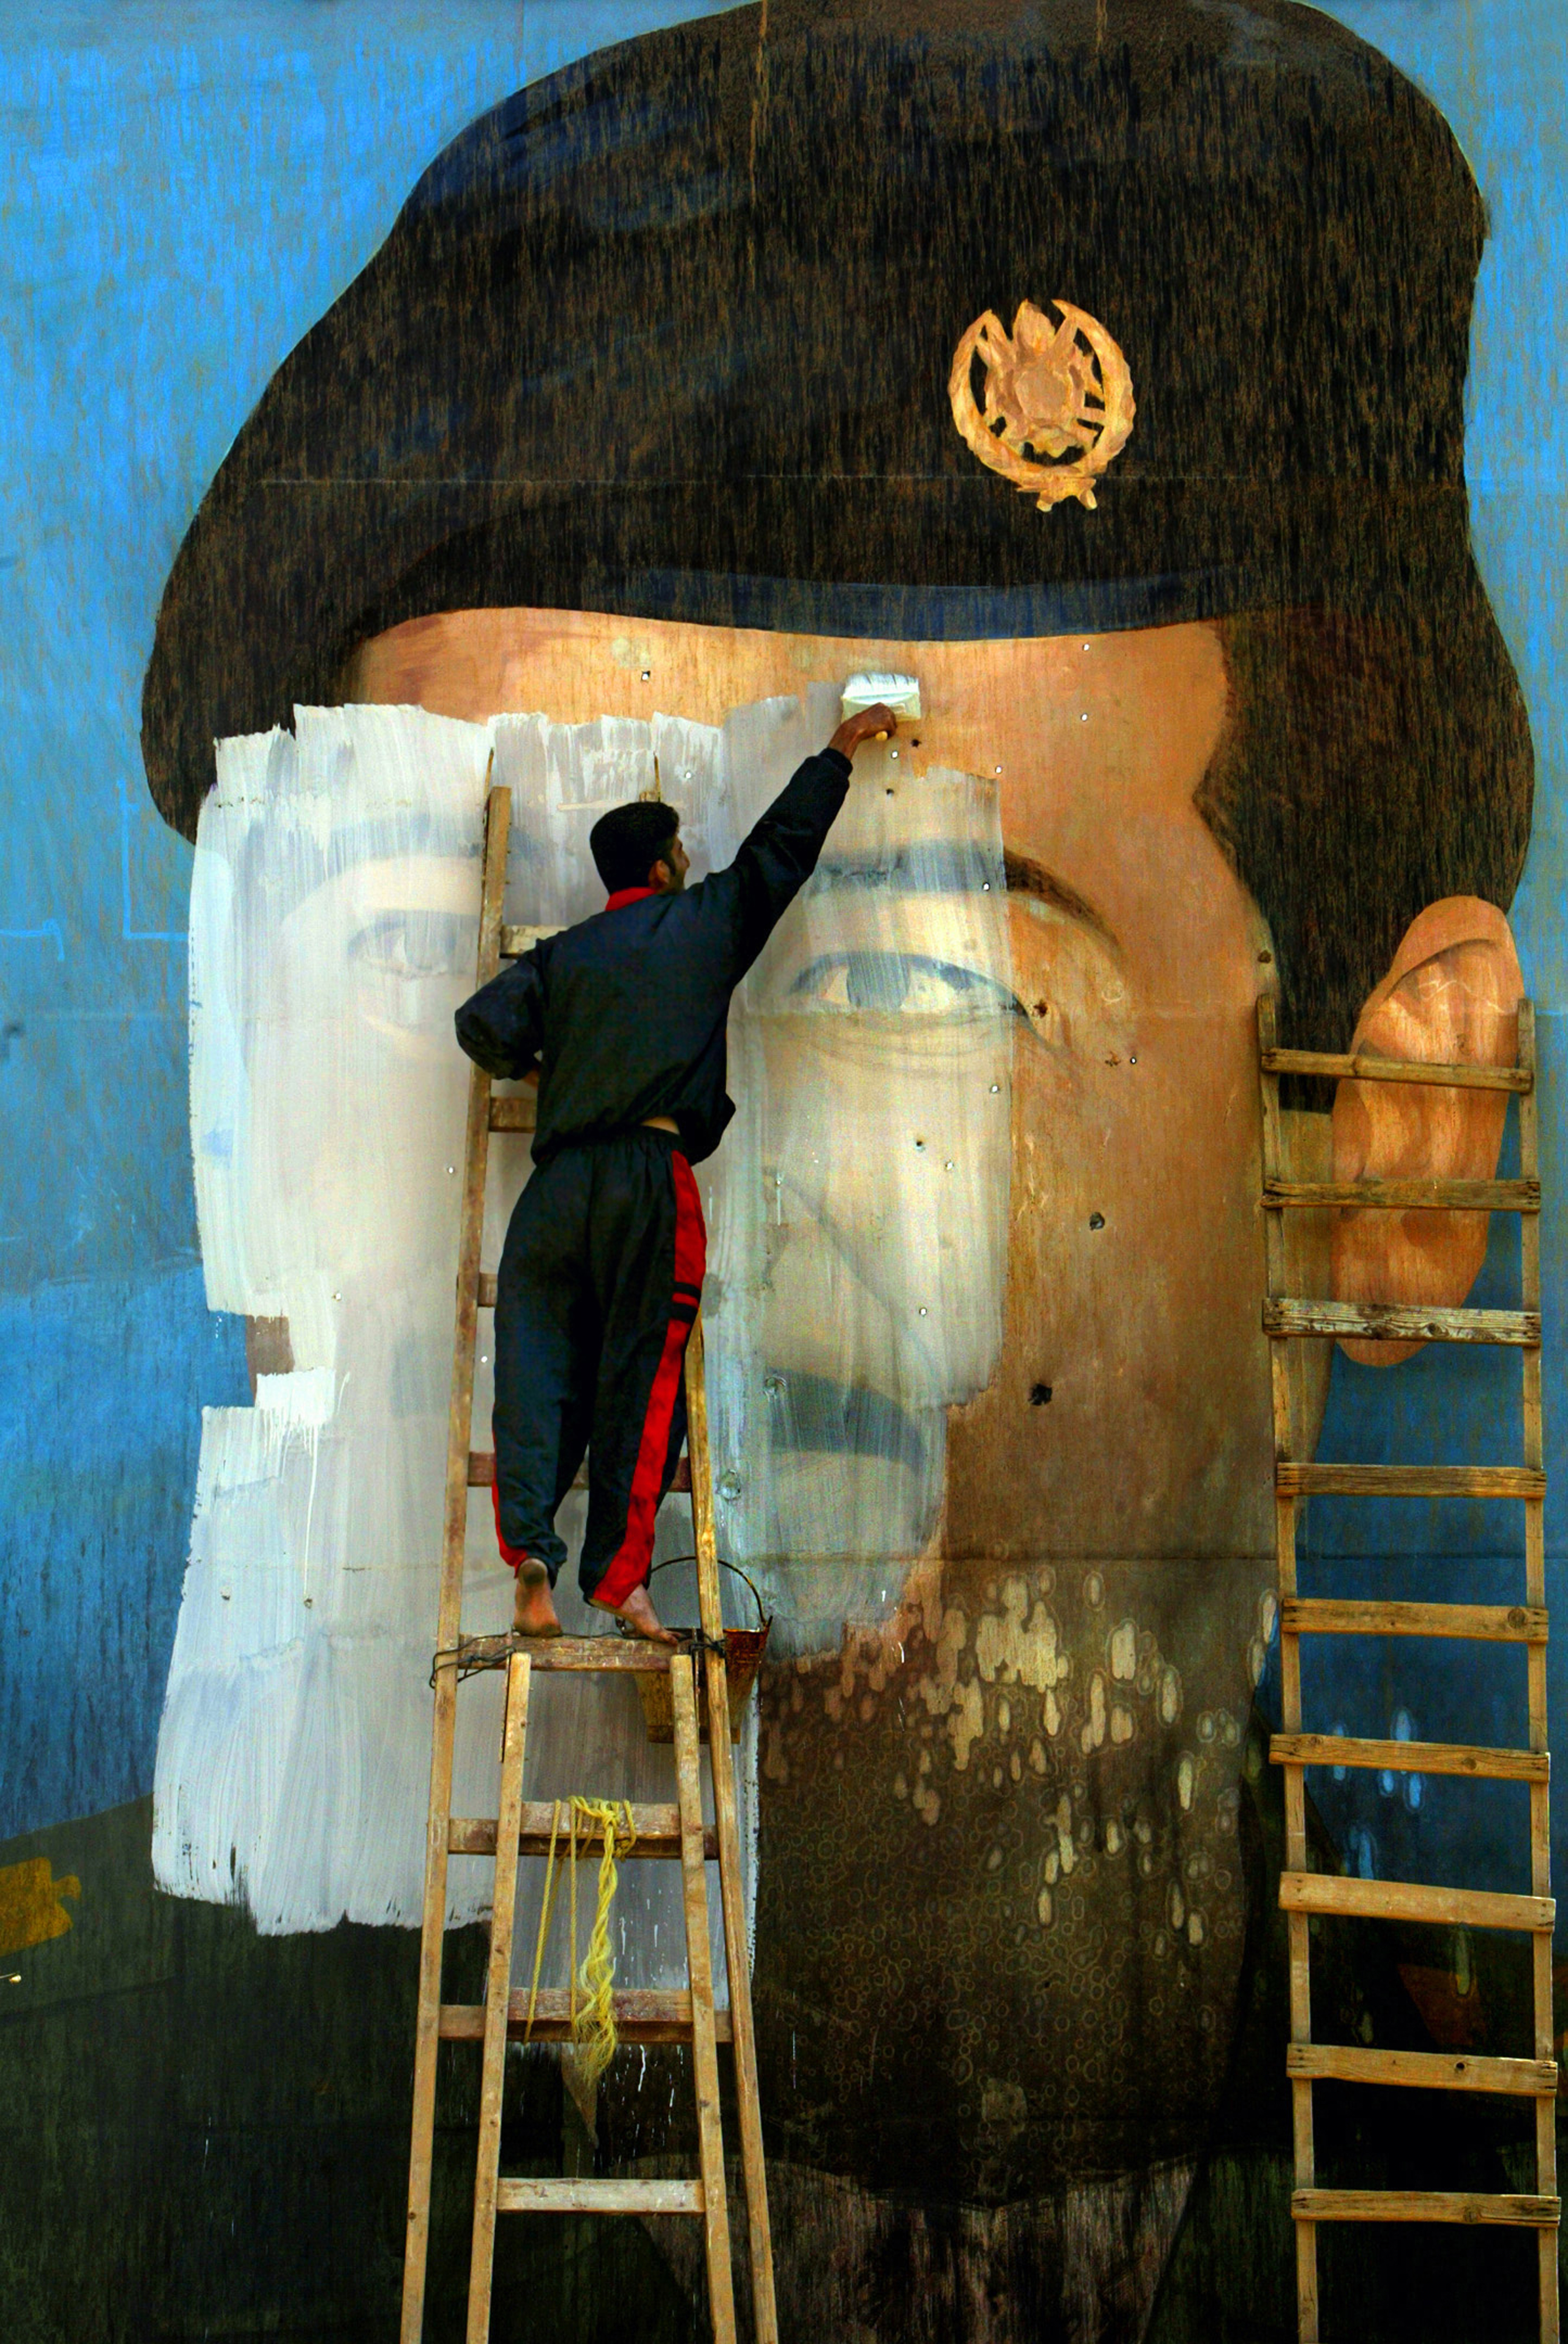 Carolyn Cole, Une photo de Saddam Hussein, criblée d’impacts de balles et recouverte de peinture par Salem Yuel. Bagdad, Irak, avril 2003 © Carolyn Cole / Los Angeles Times